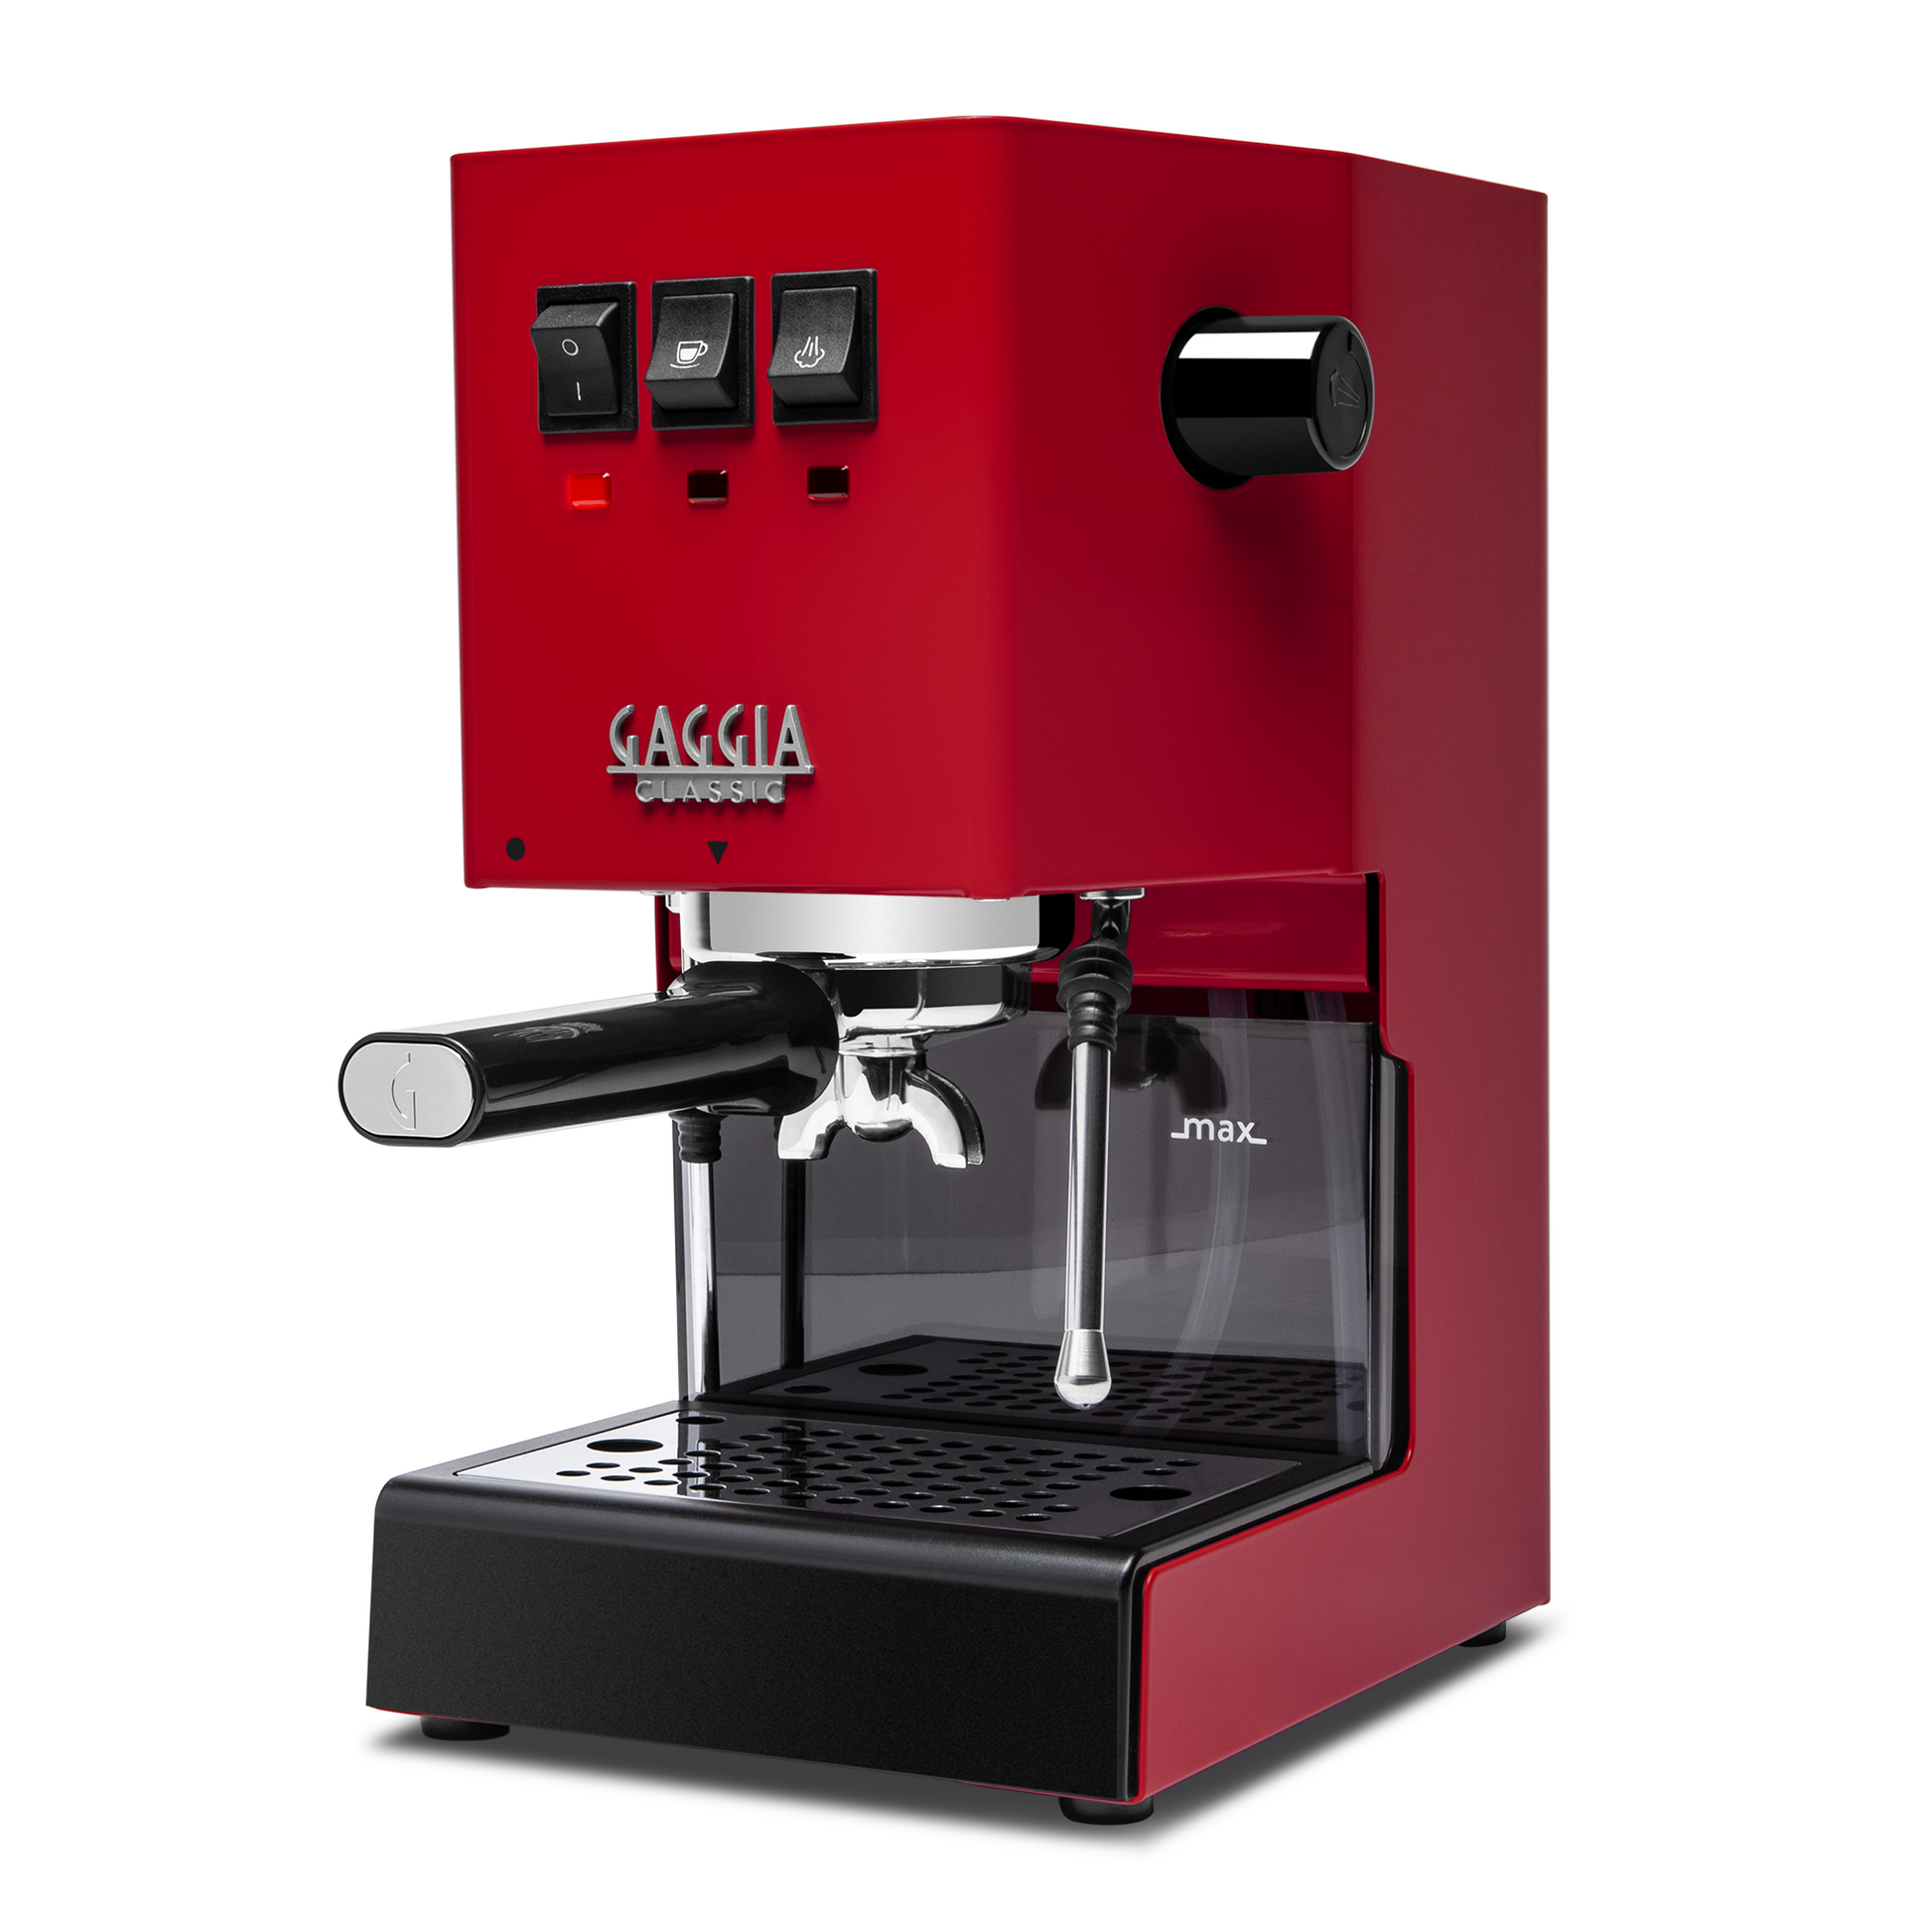 The Gaggia Classic Evo Pro espresso machine is 19% off